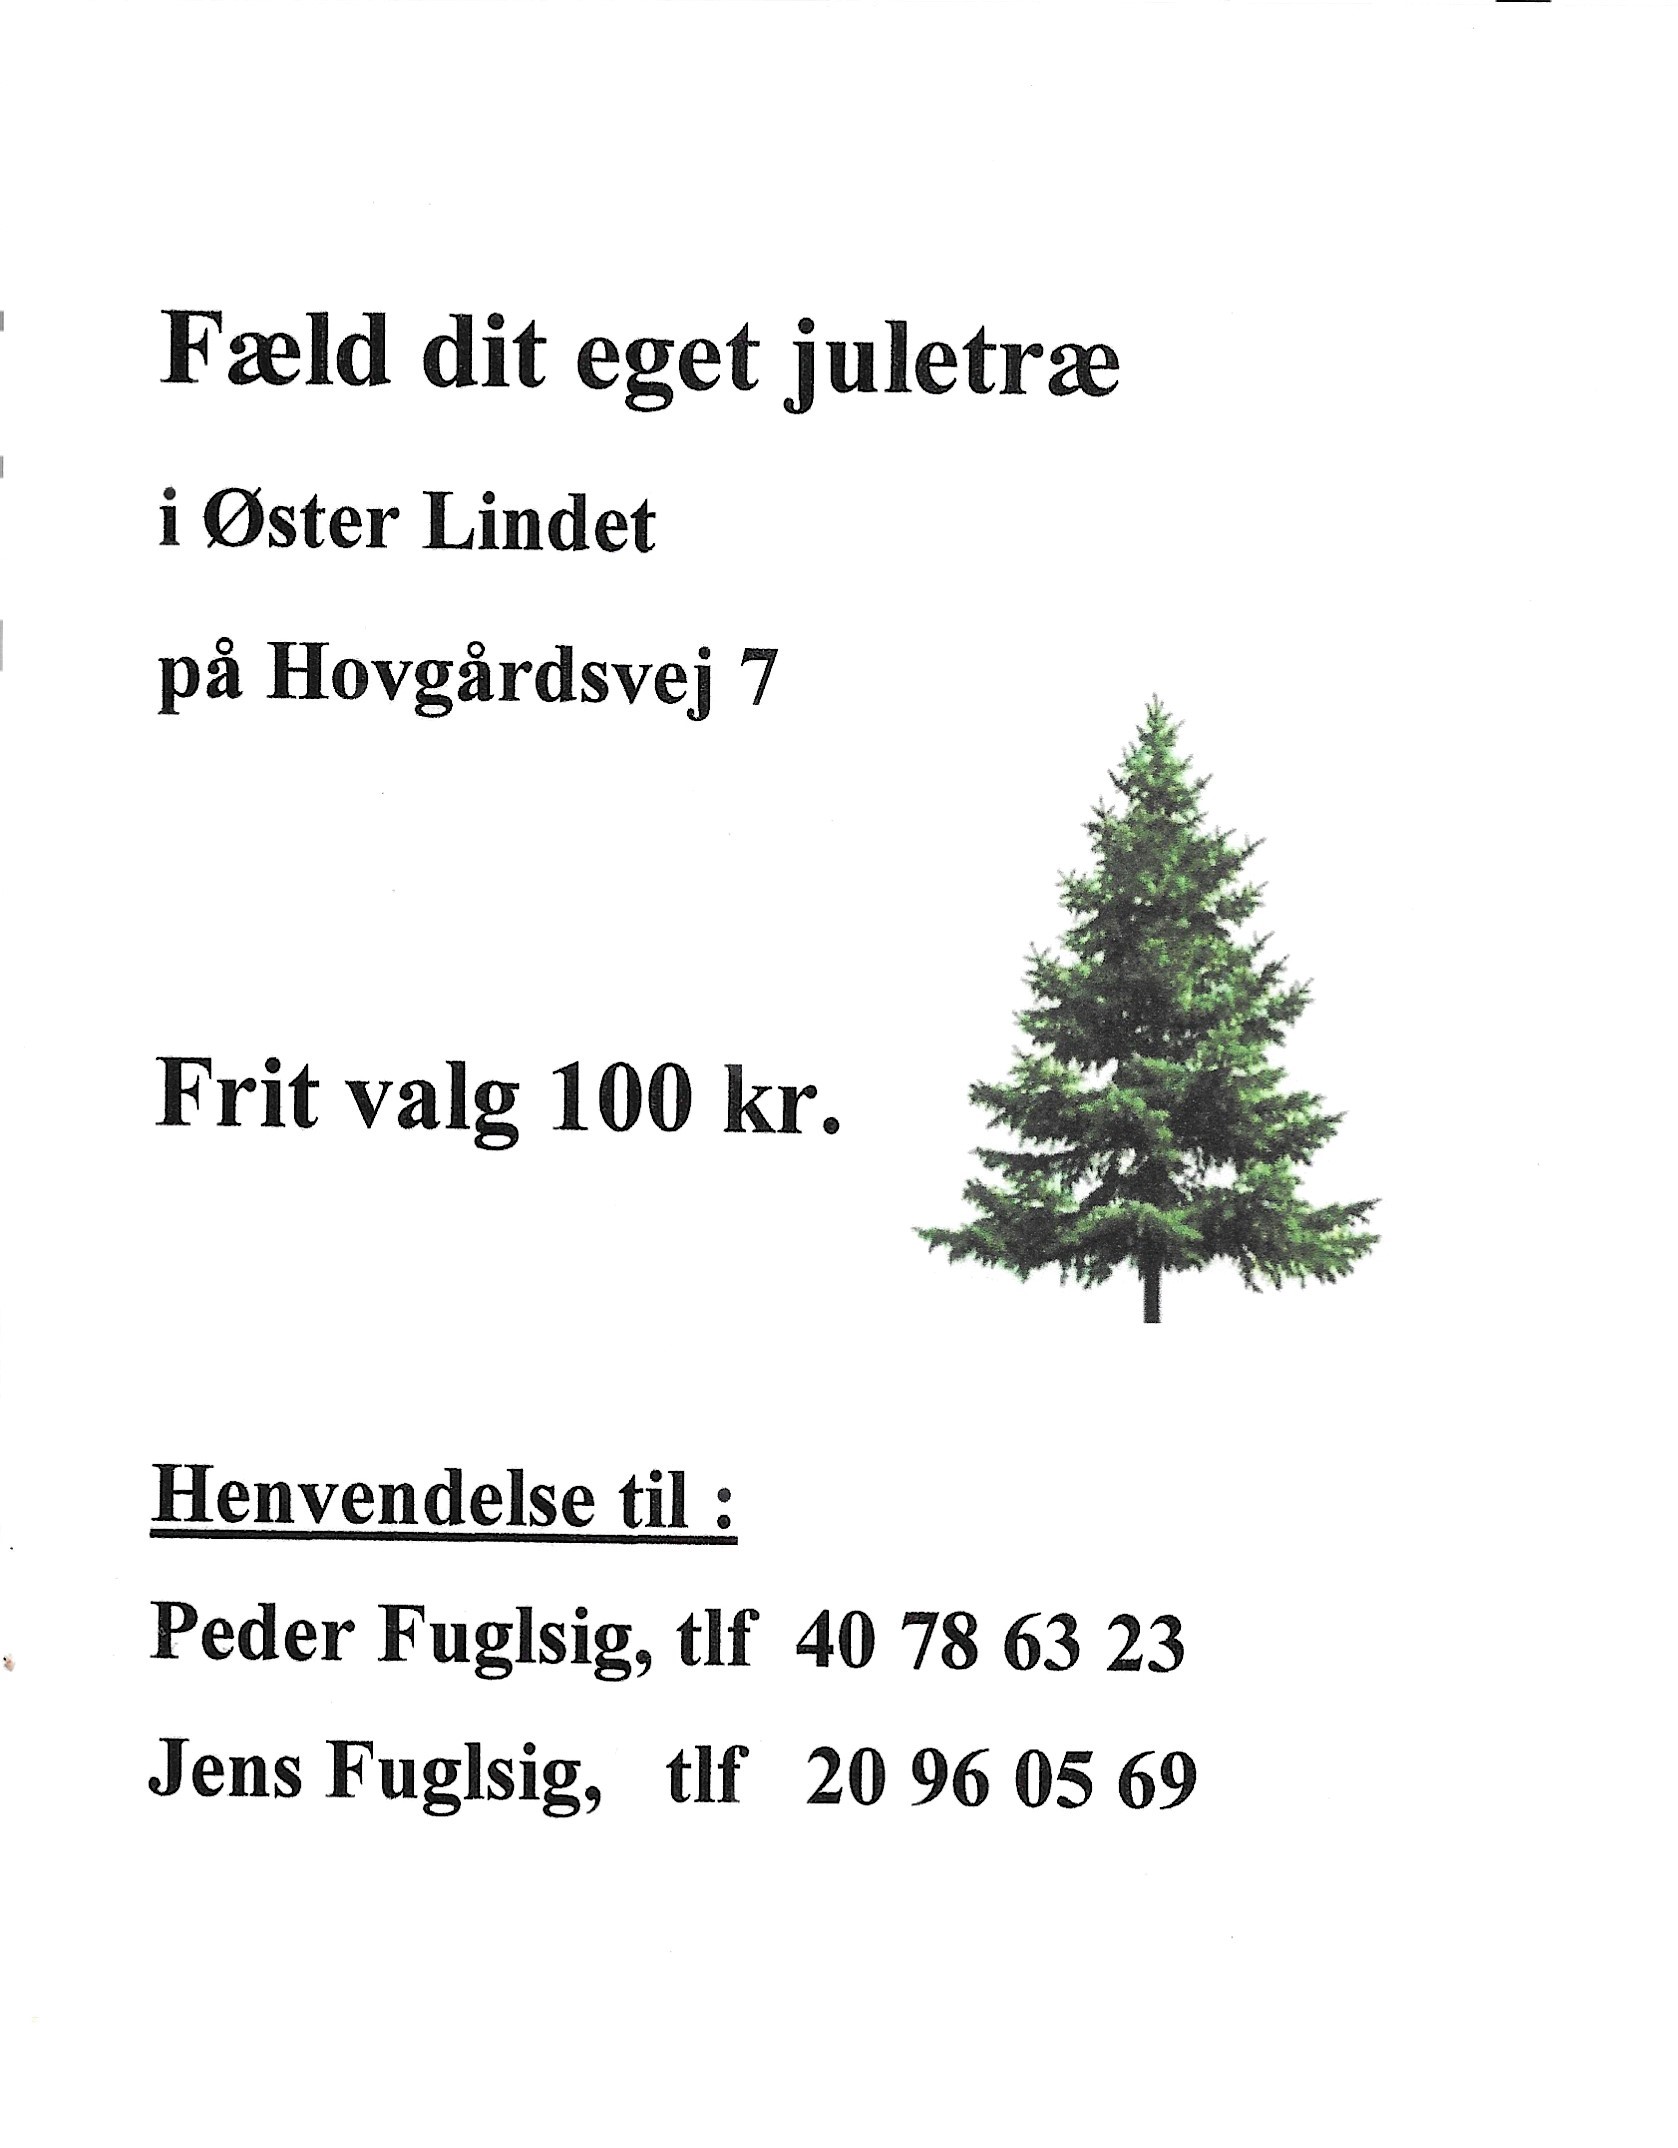 Fæld juletræ 2021